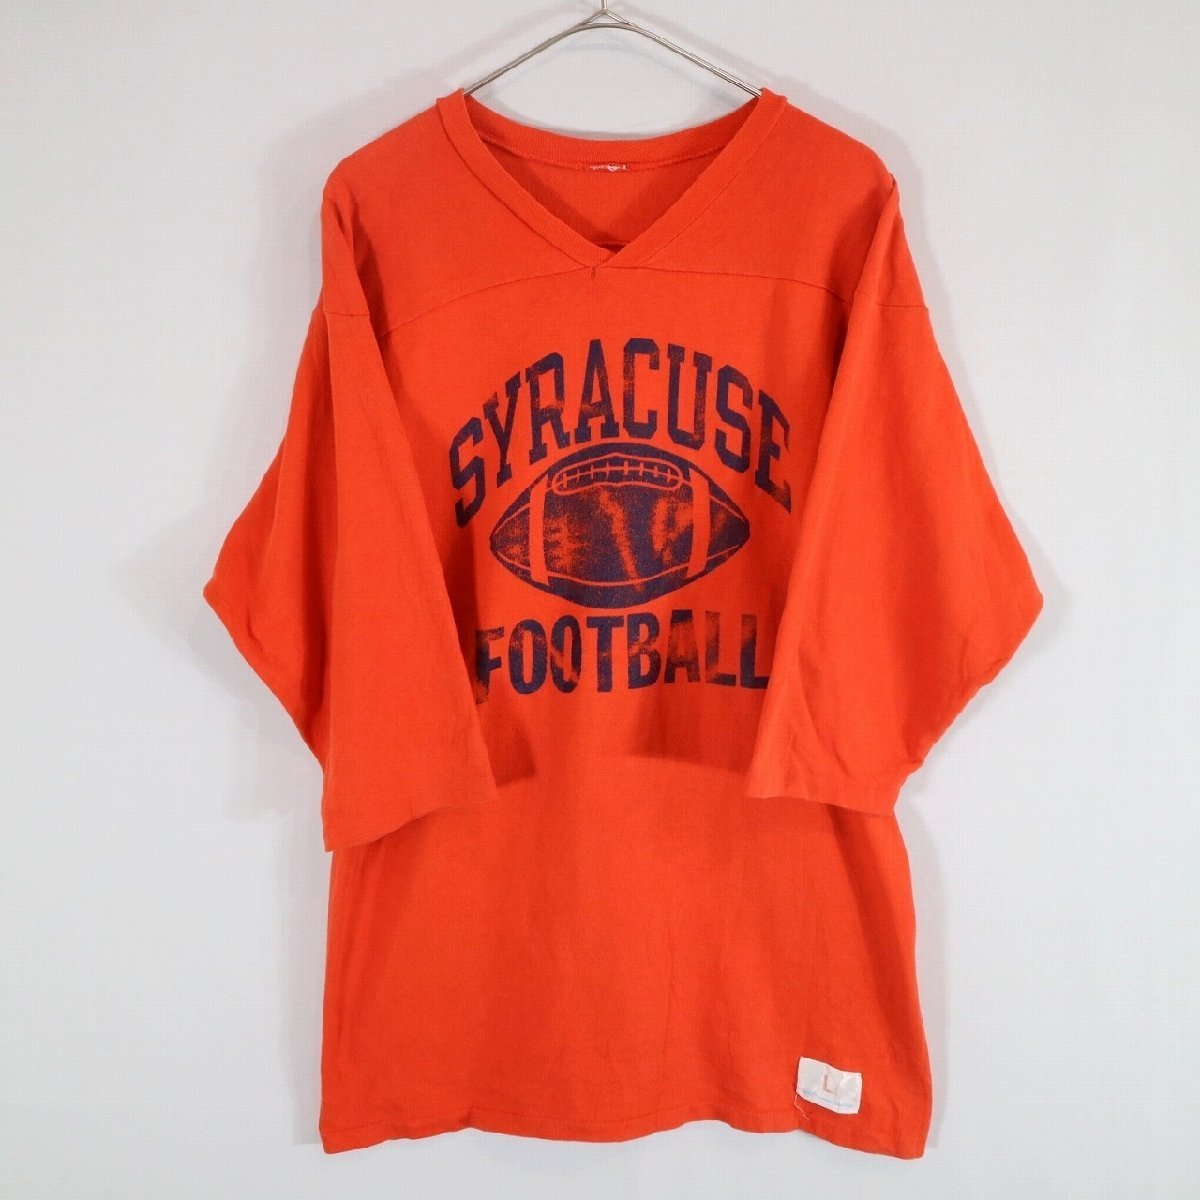 SALE///// 70s Champion チャンピオン フットボールTシャツ カレッジ アメフト 三段プリント オレンジ ( メンズ L ) N4700_画像1